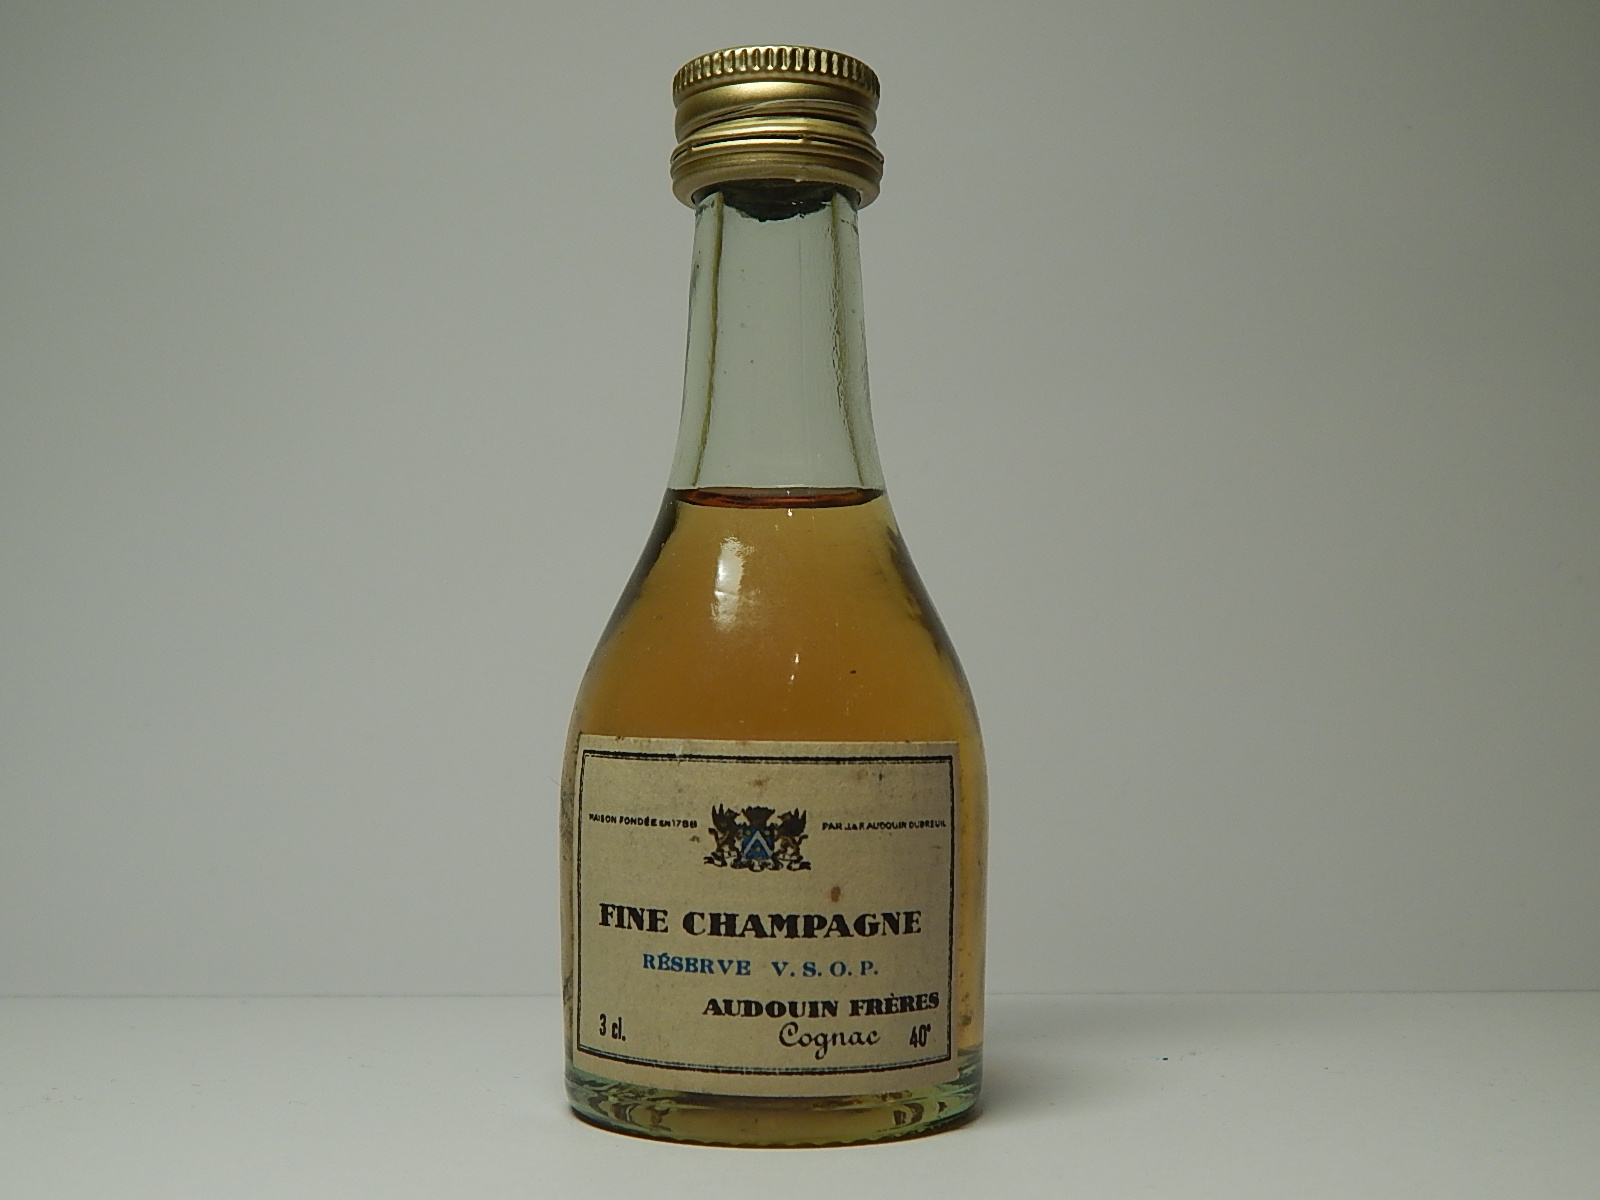 AUDOUIN FRERES VSOP Reserve Fine Champagne Cognac